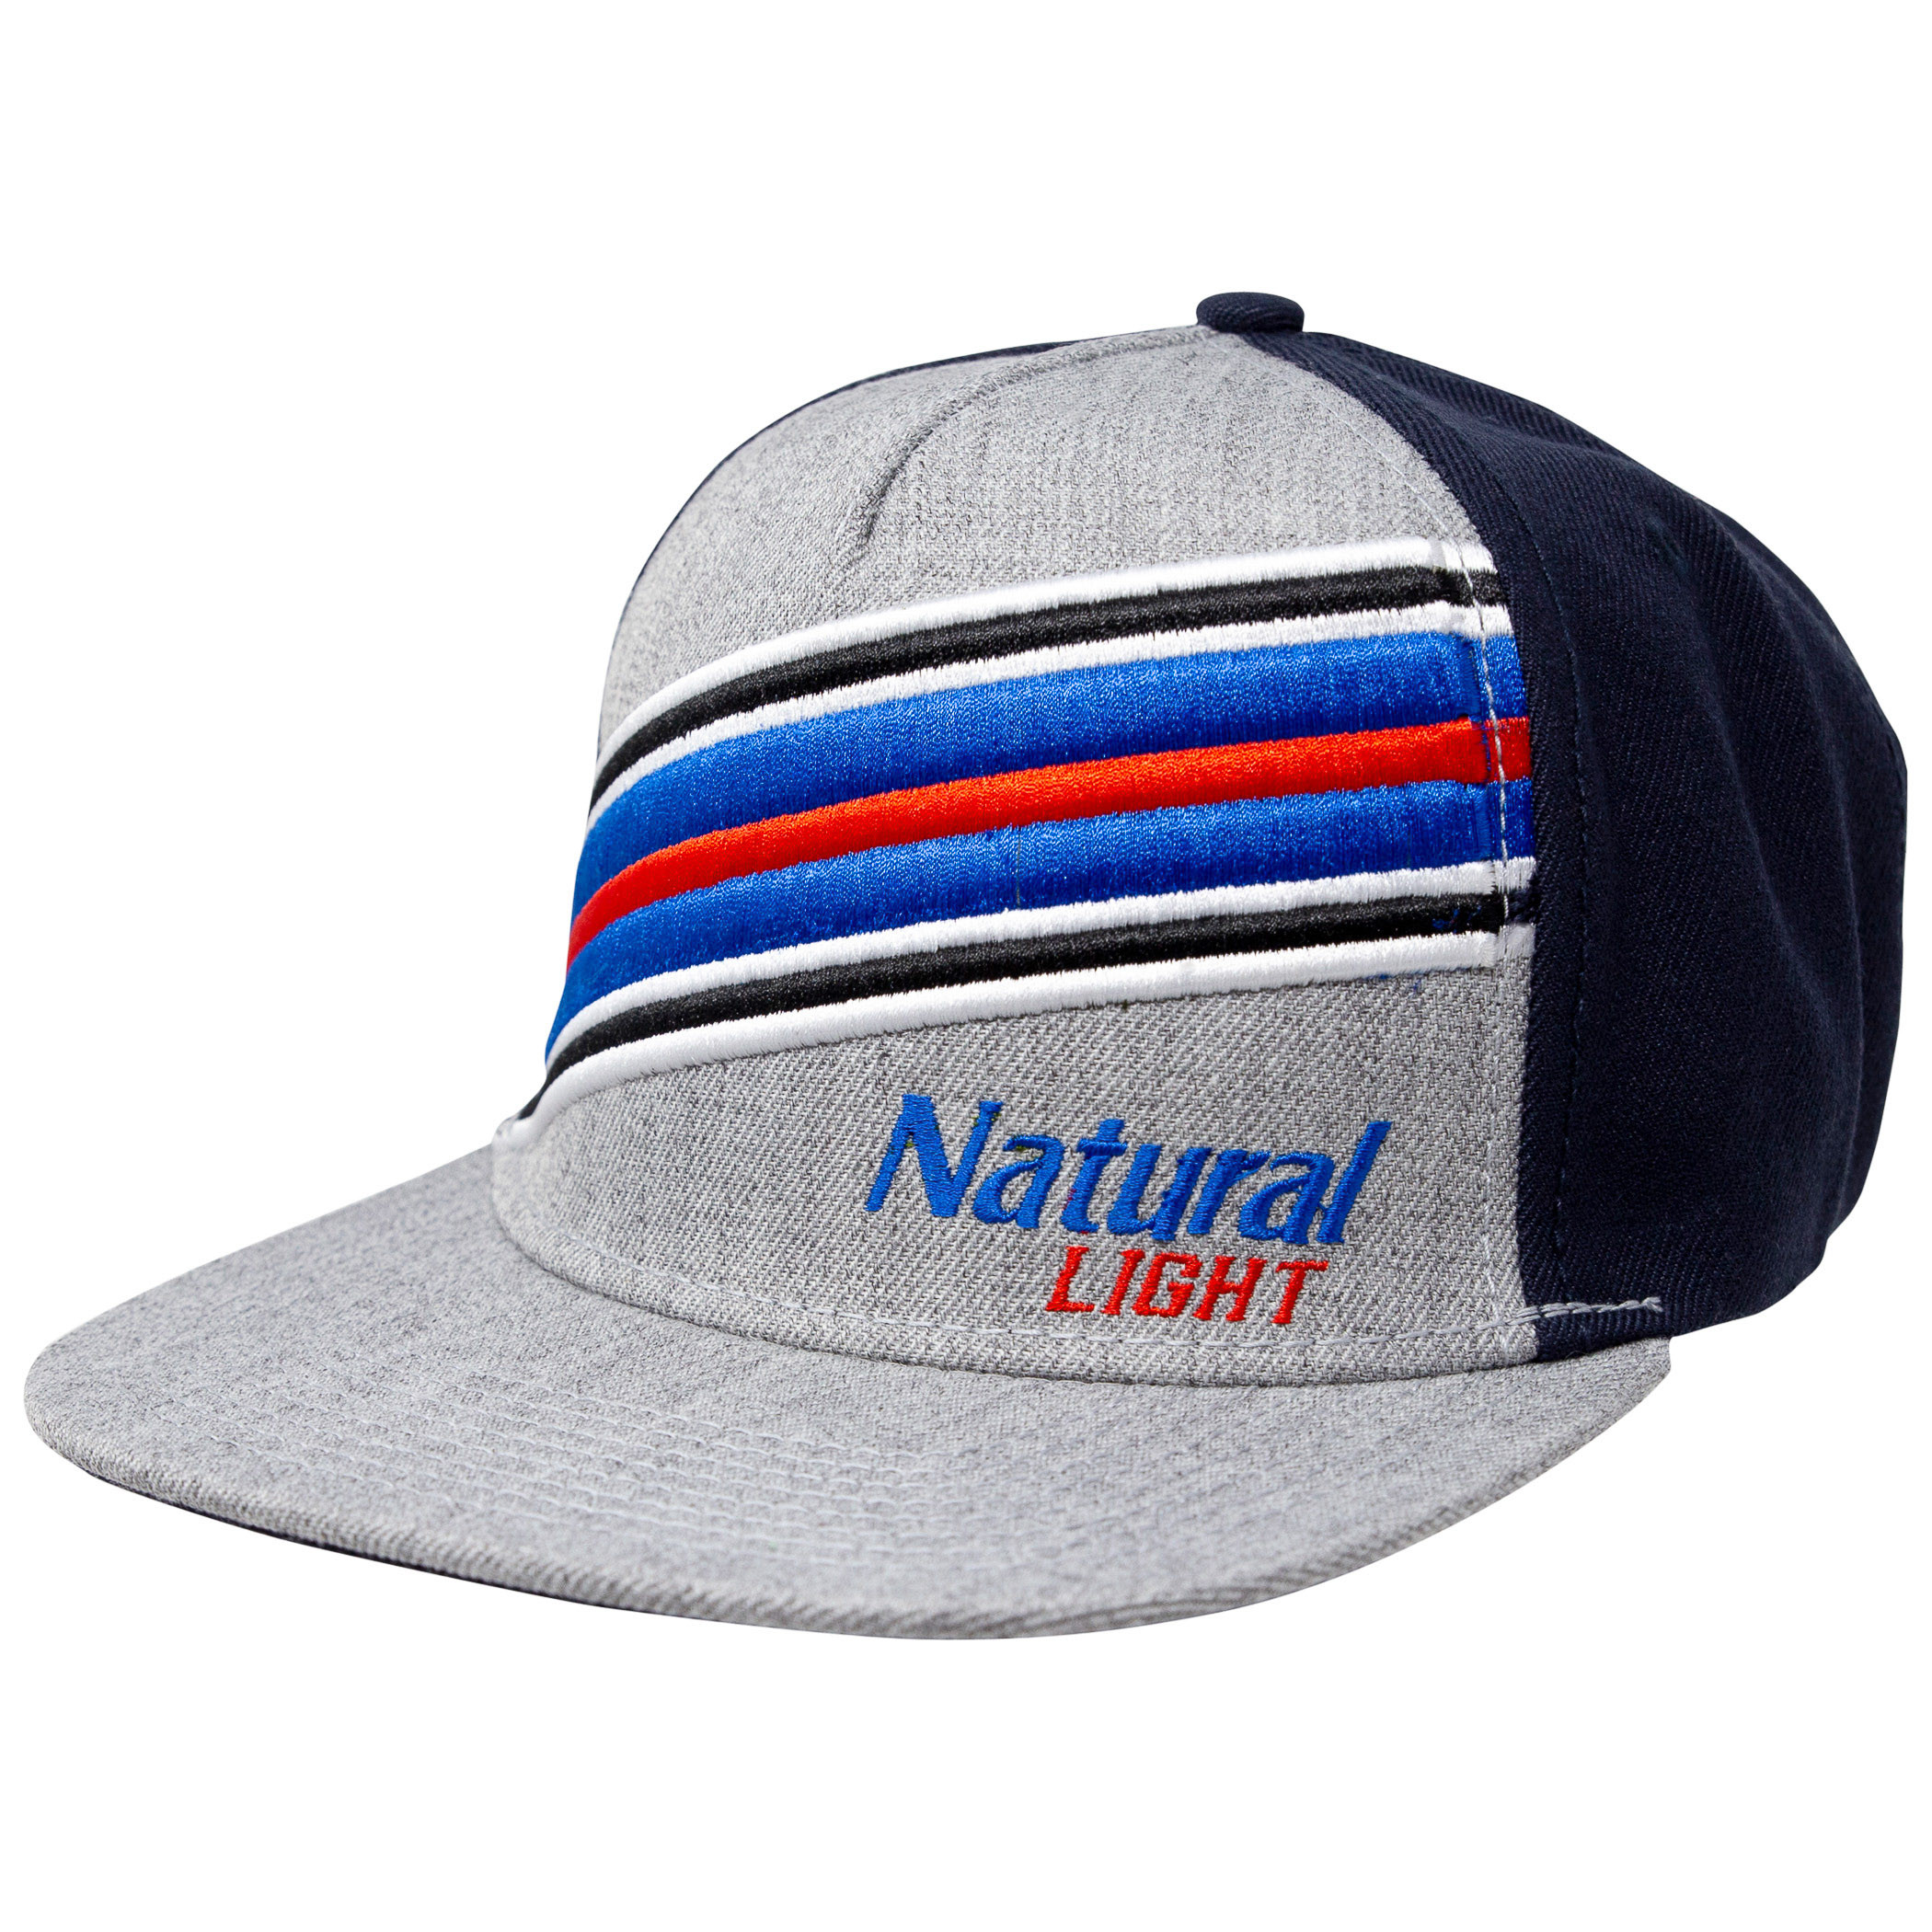 Natural Light Beer Striped Adjustable Snapback Hat